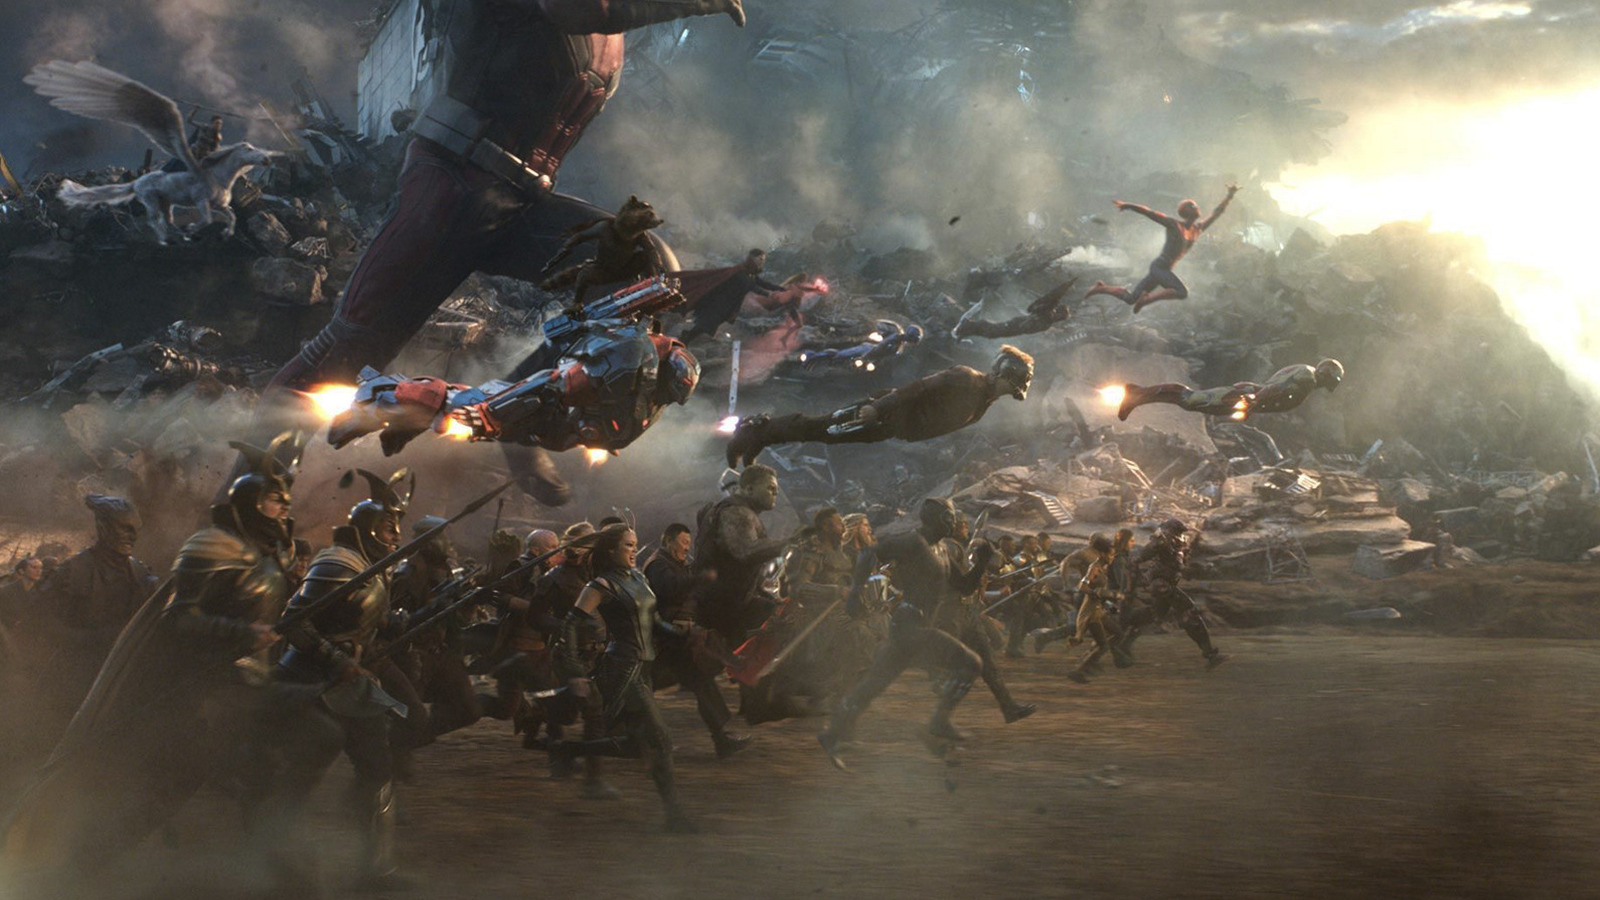 How Avengers: Endgame Fulfills the Emotional Arcs of Marvel's